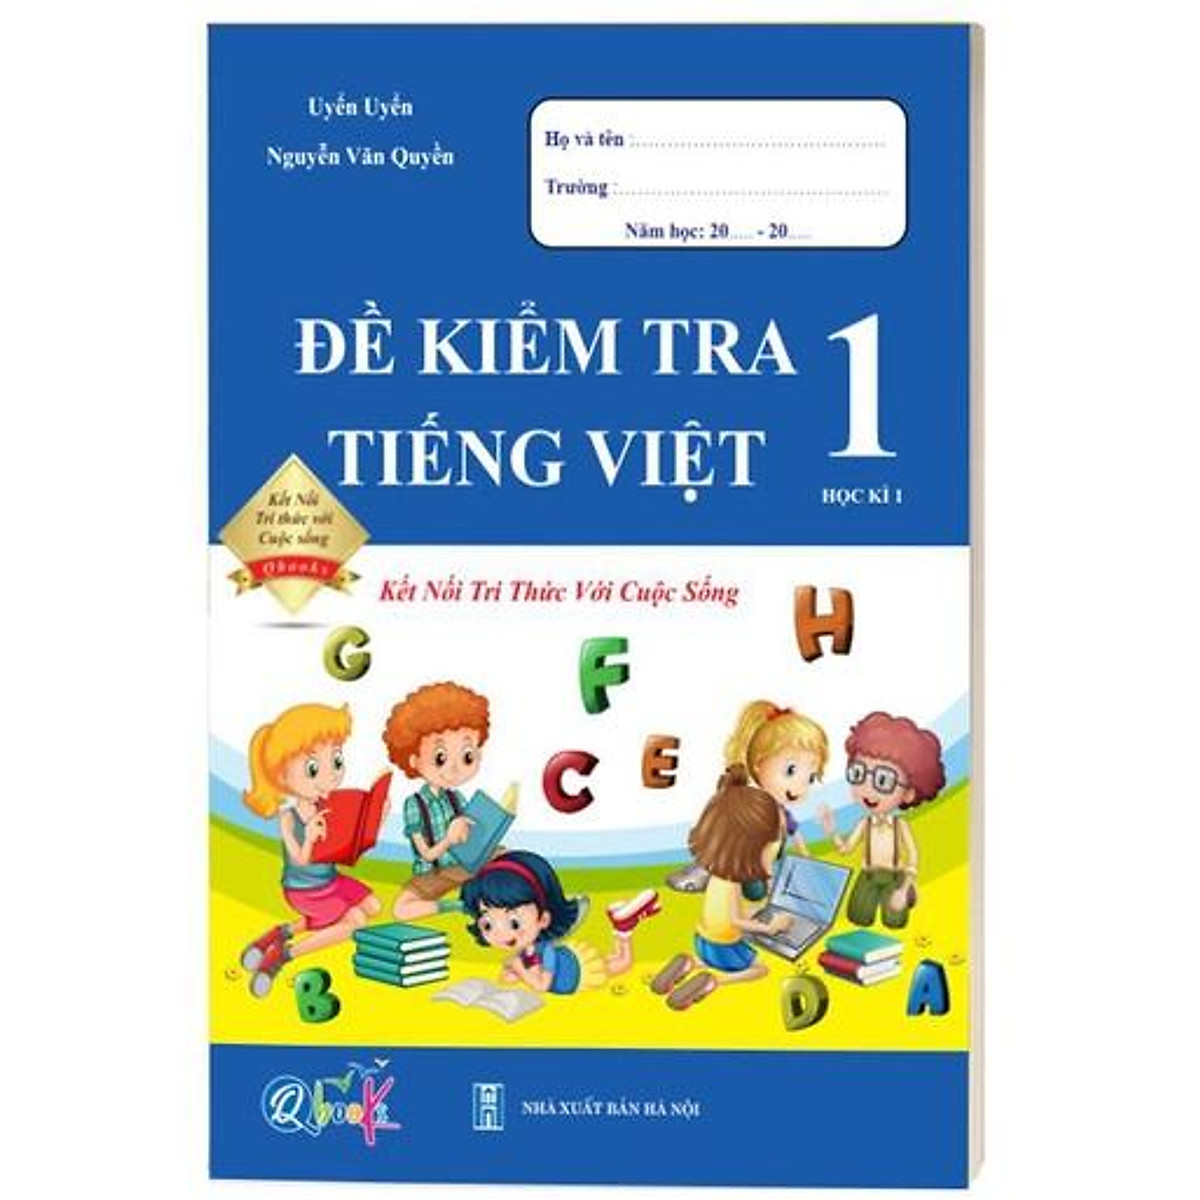 Sách - Combo Đề Kiểm Tra Lớp 1 Cả Năm - Toán và Tiếng Việt Kết Nối Tri Thức Với Cuộc Sống (4 quyển)